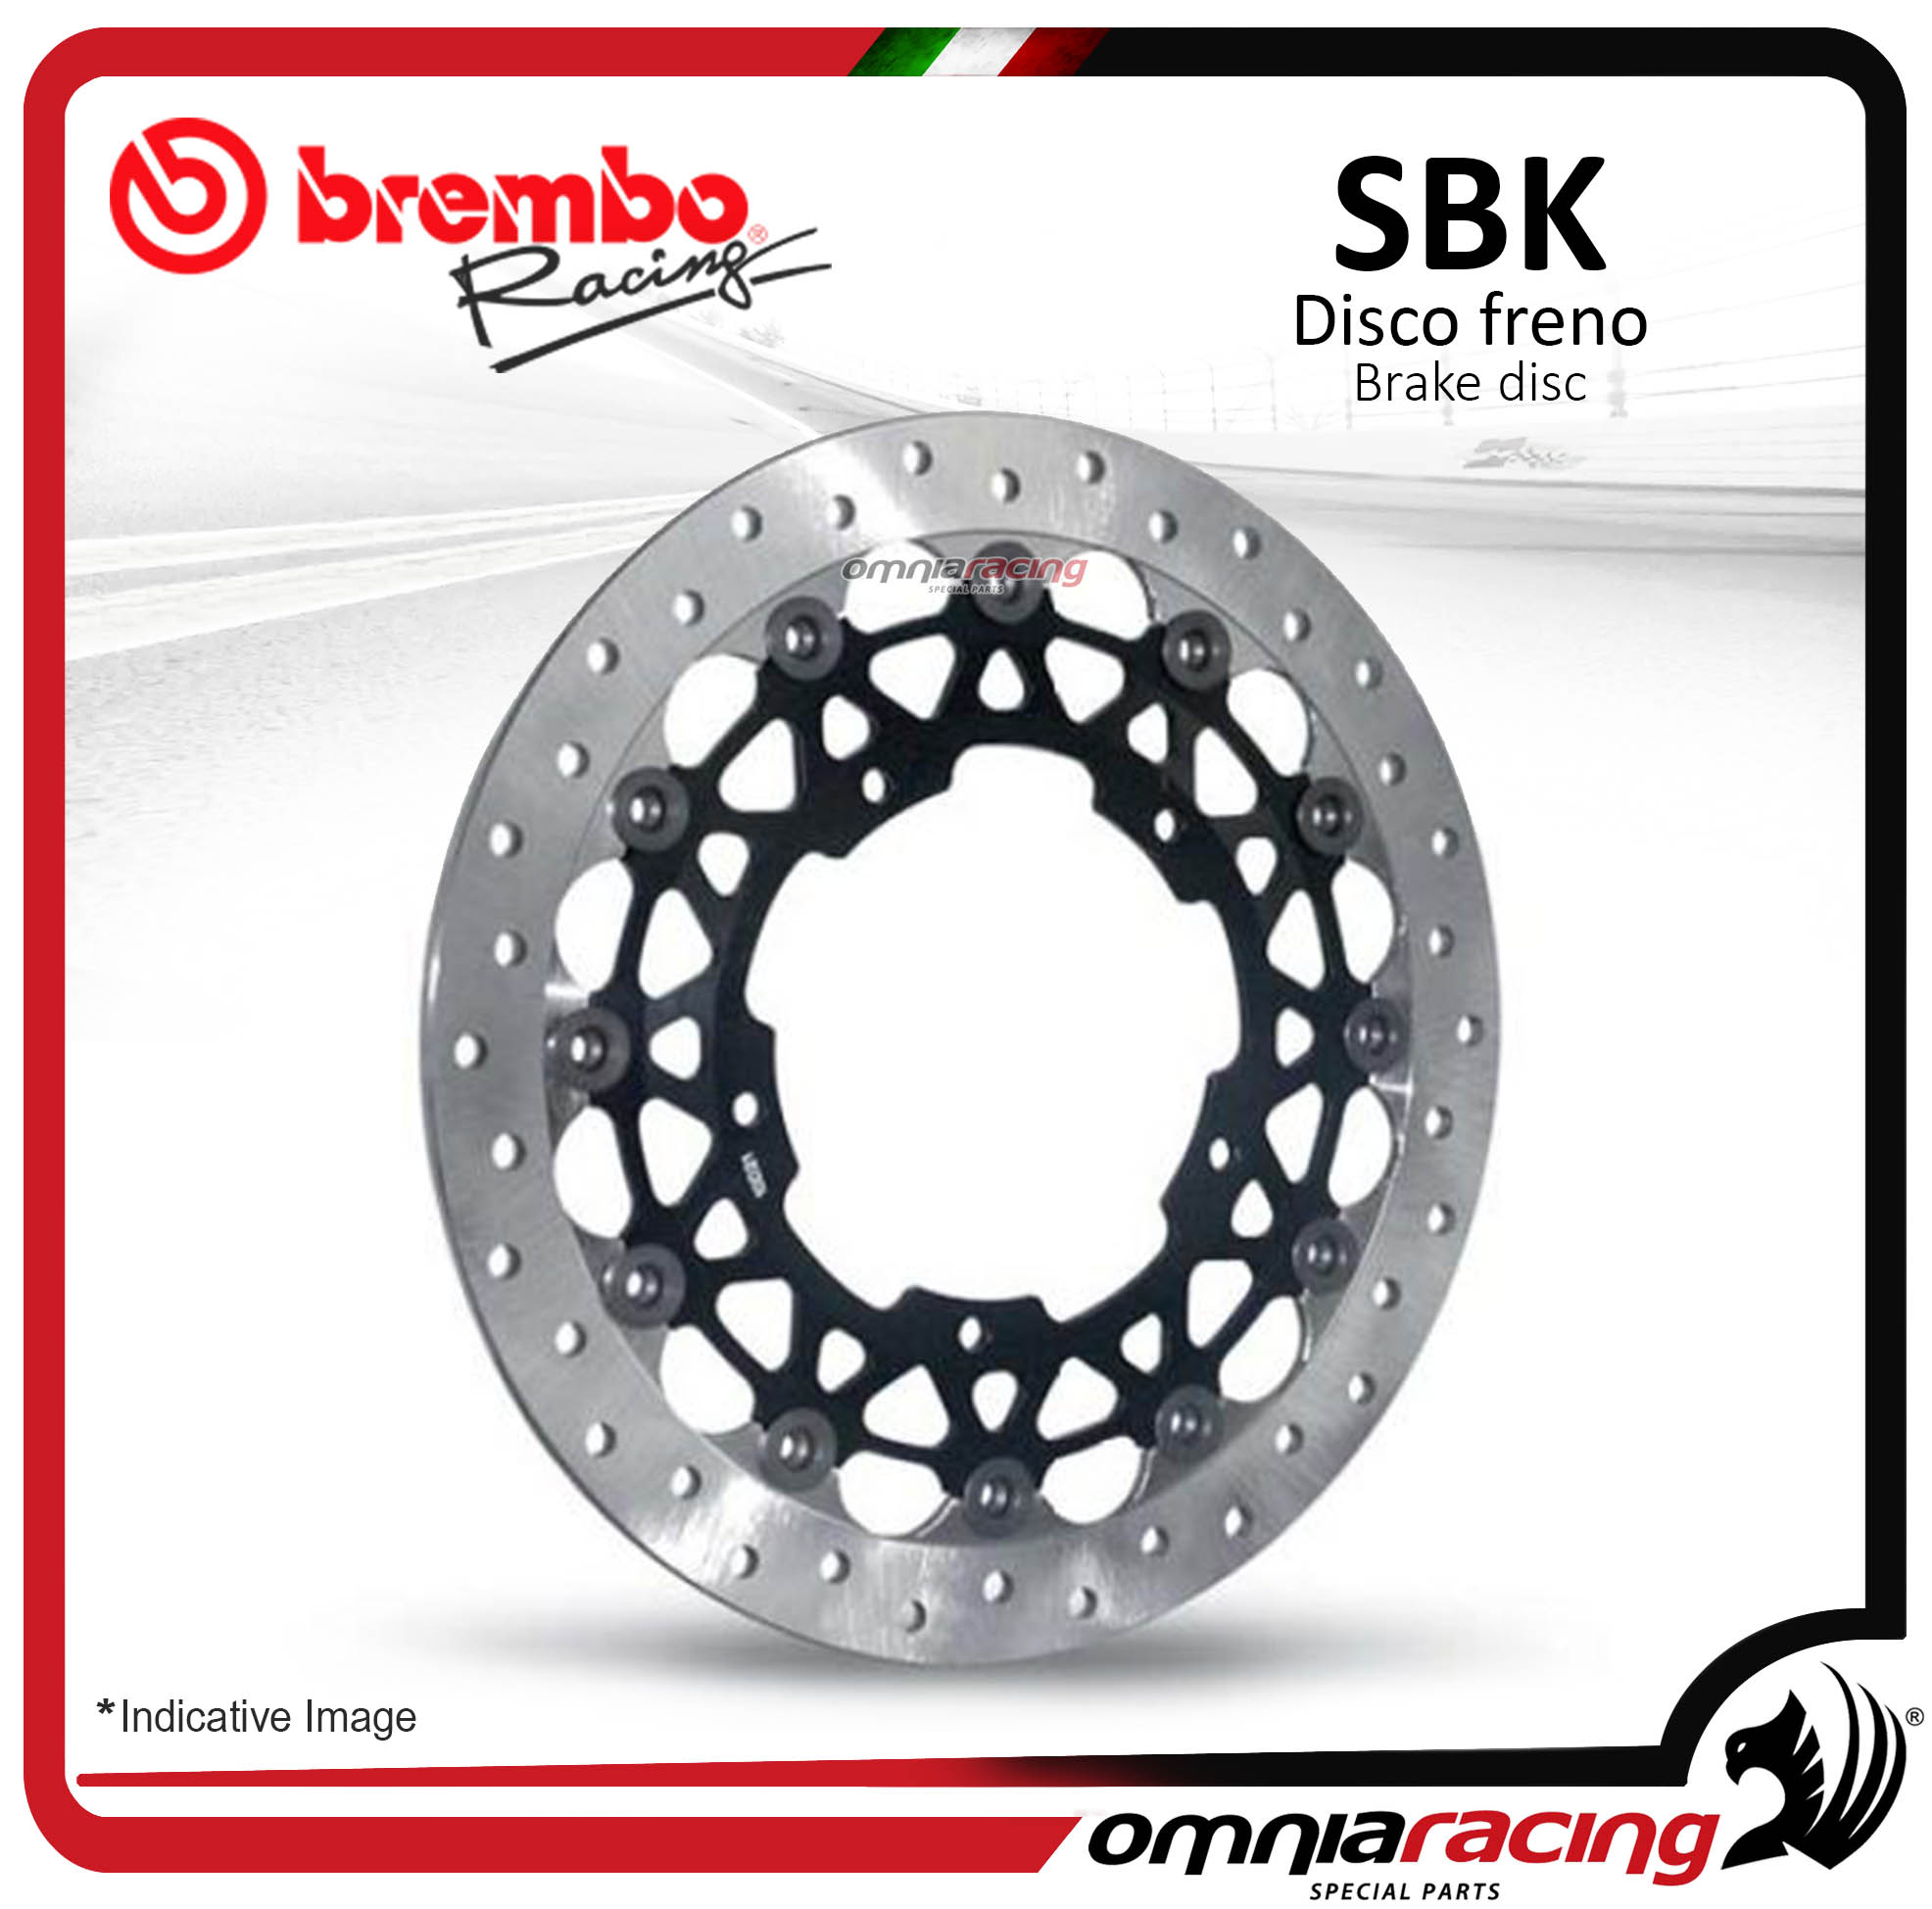 Disco Freno SBK Brembo Racing fascia frenante 30mm spessore 6mm Suzuki GSX-R GSXR 600 750 1000